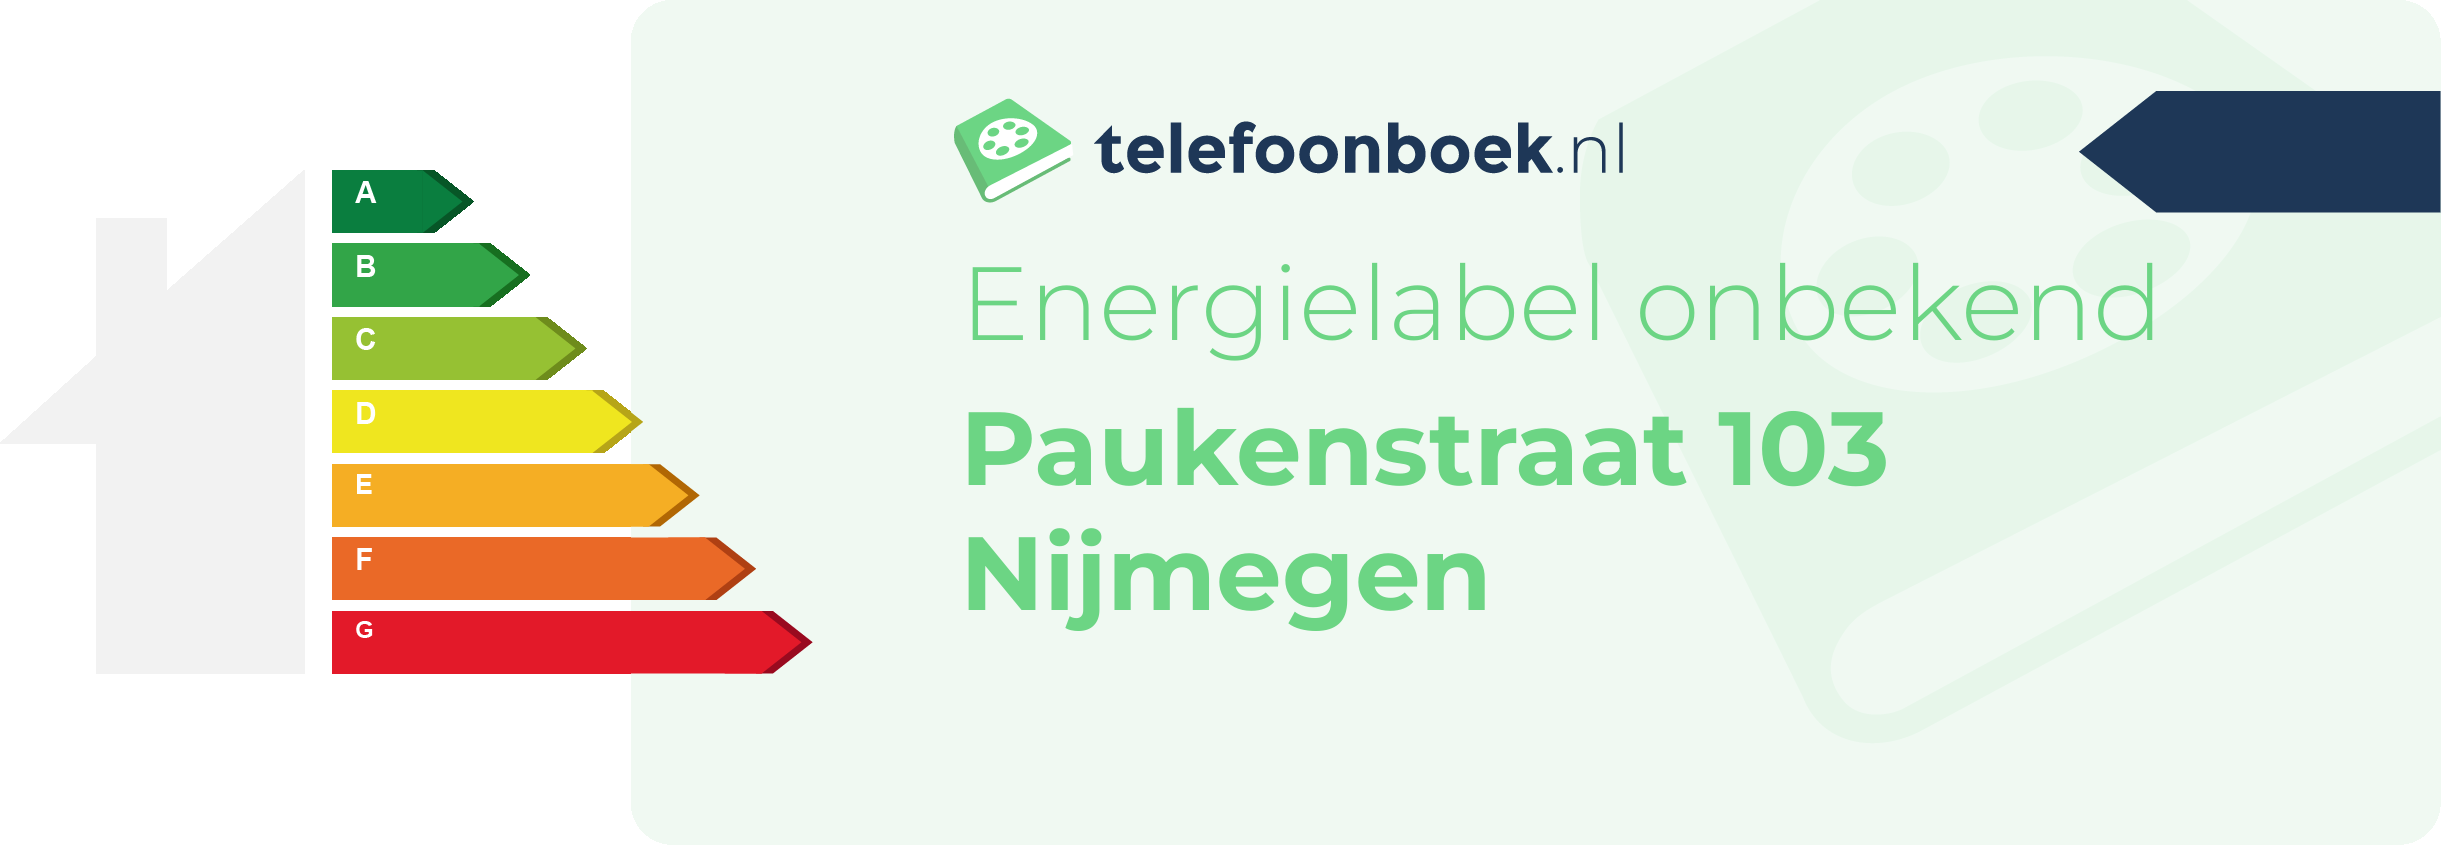 Energielabel Paukenstraat 103 Nijmegen